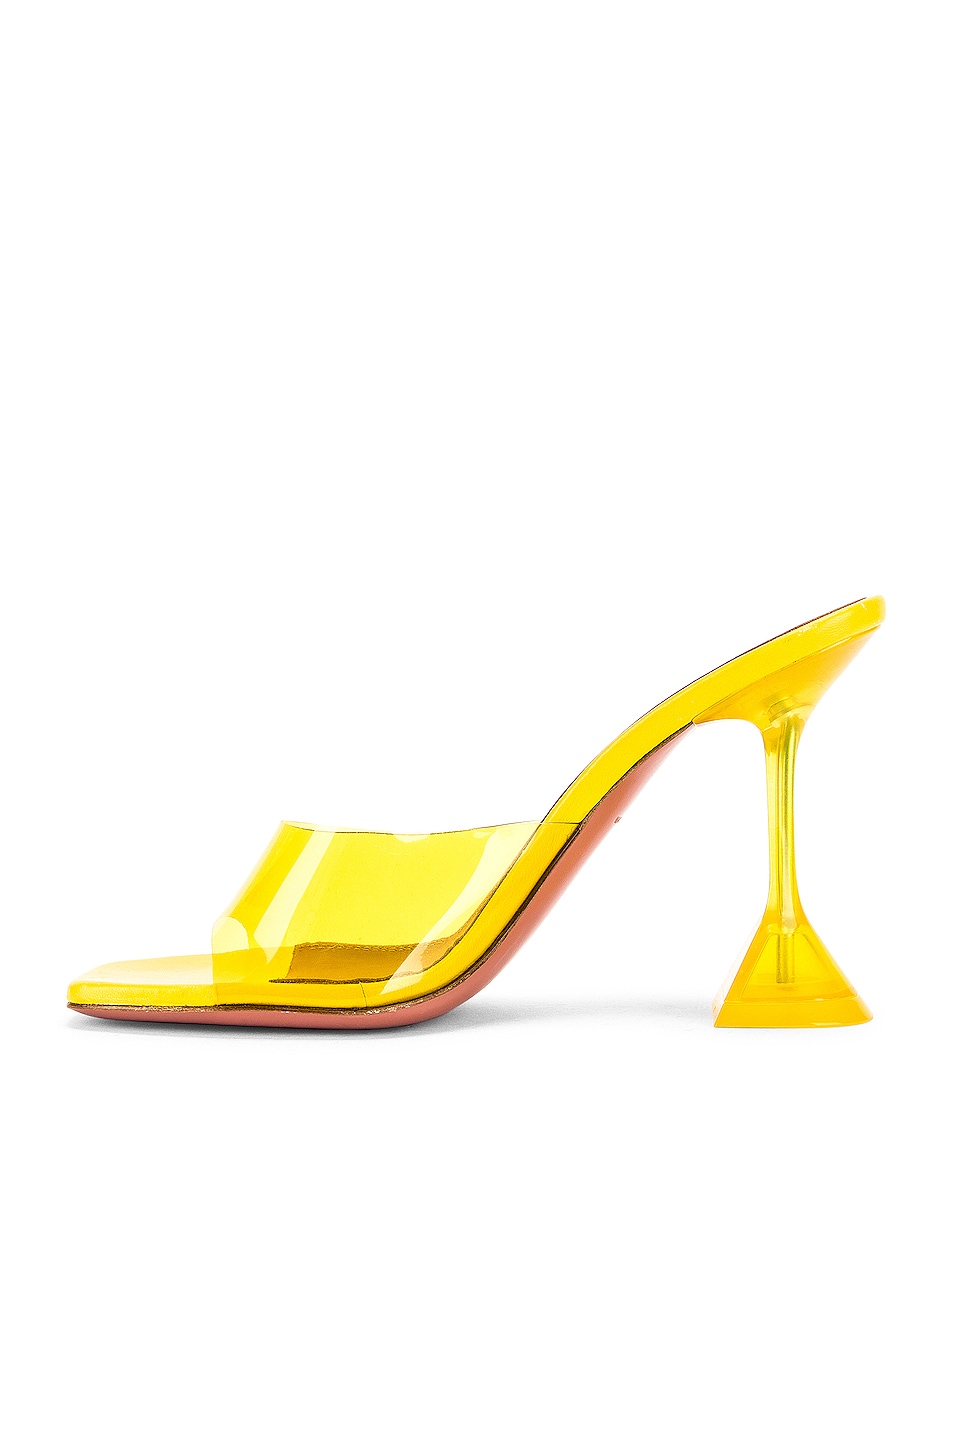 AMINA MUADDI Lupita Glass Heel in Yellow | FWRD